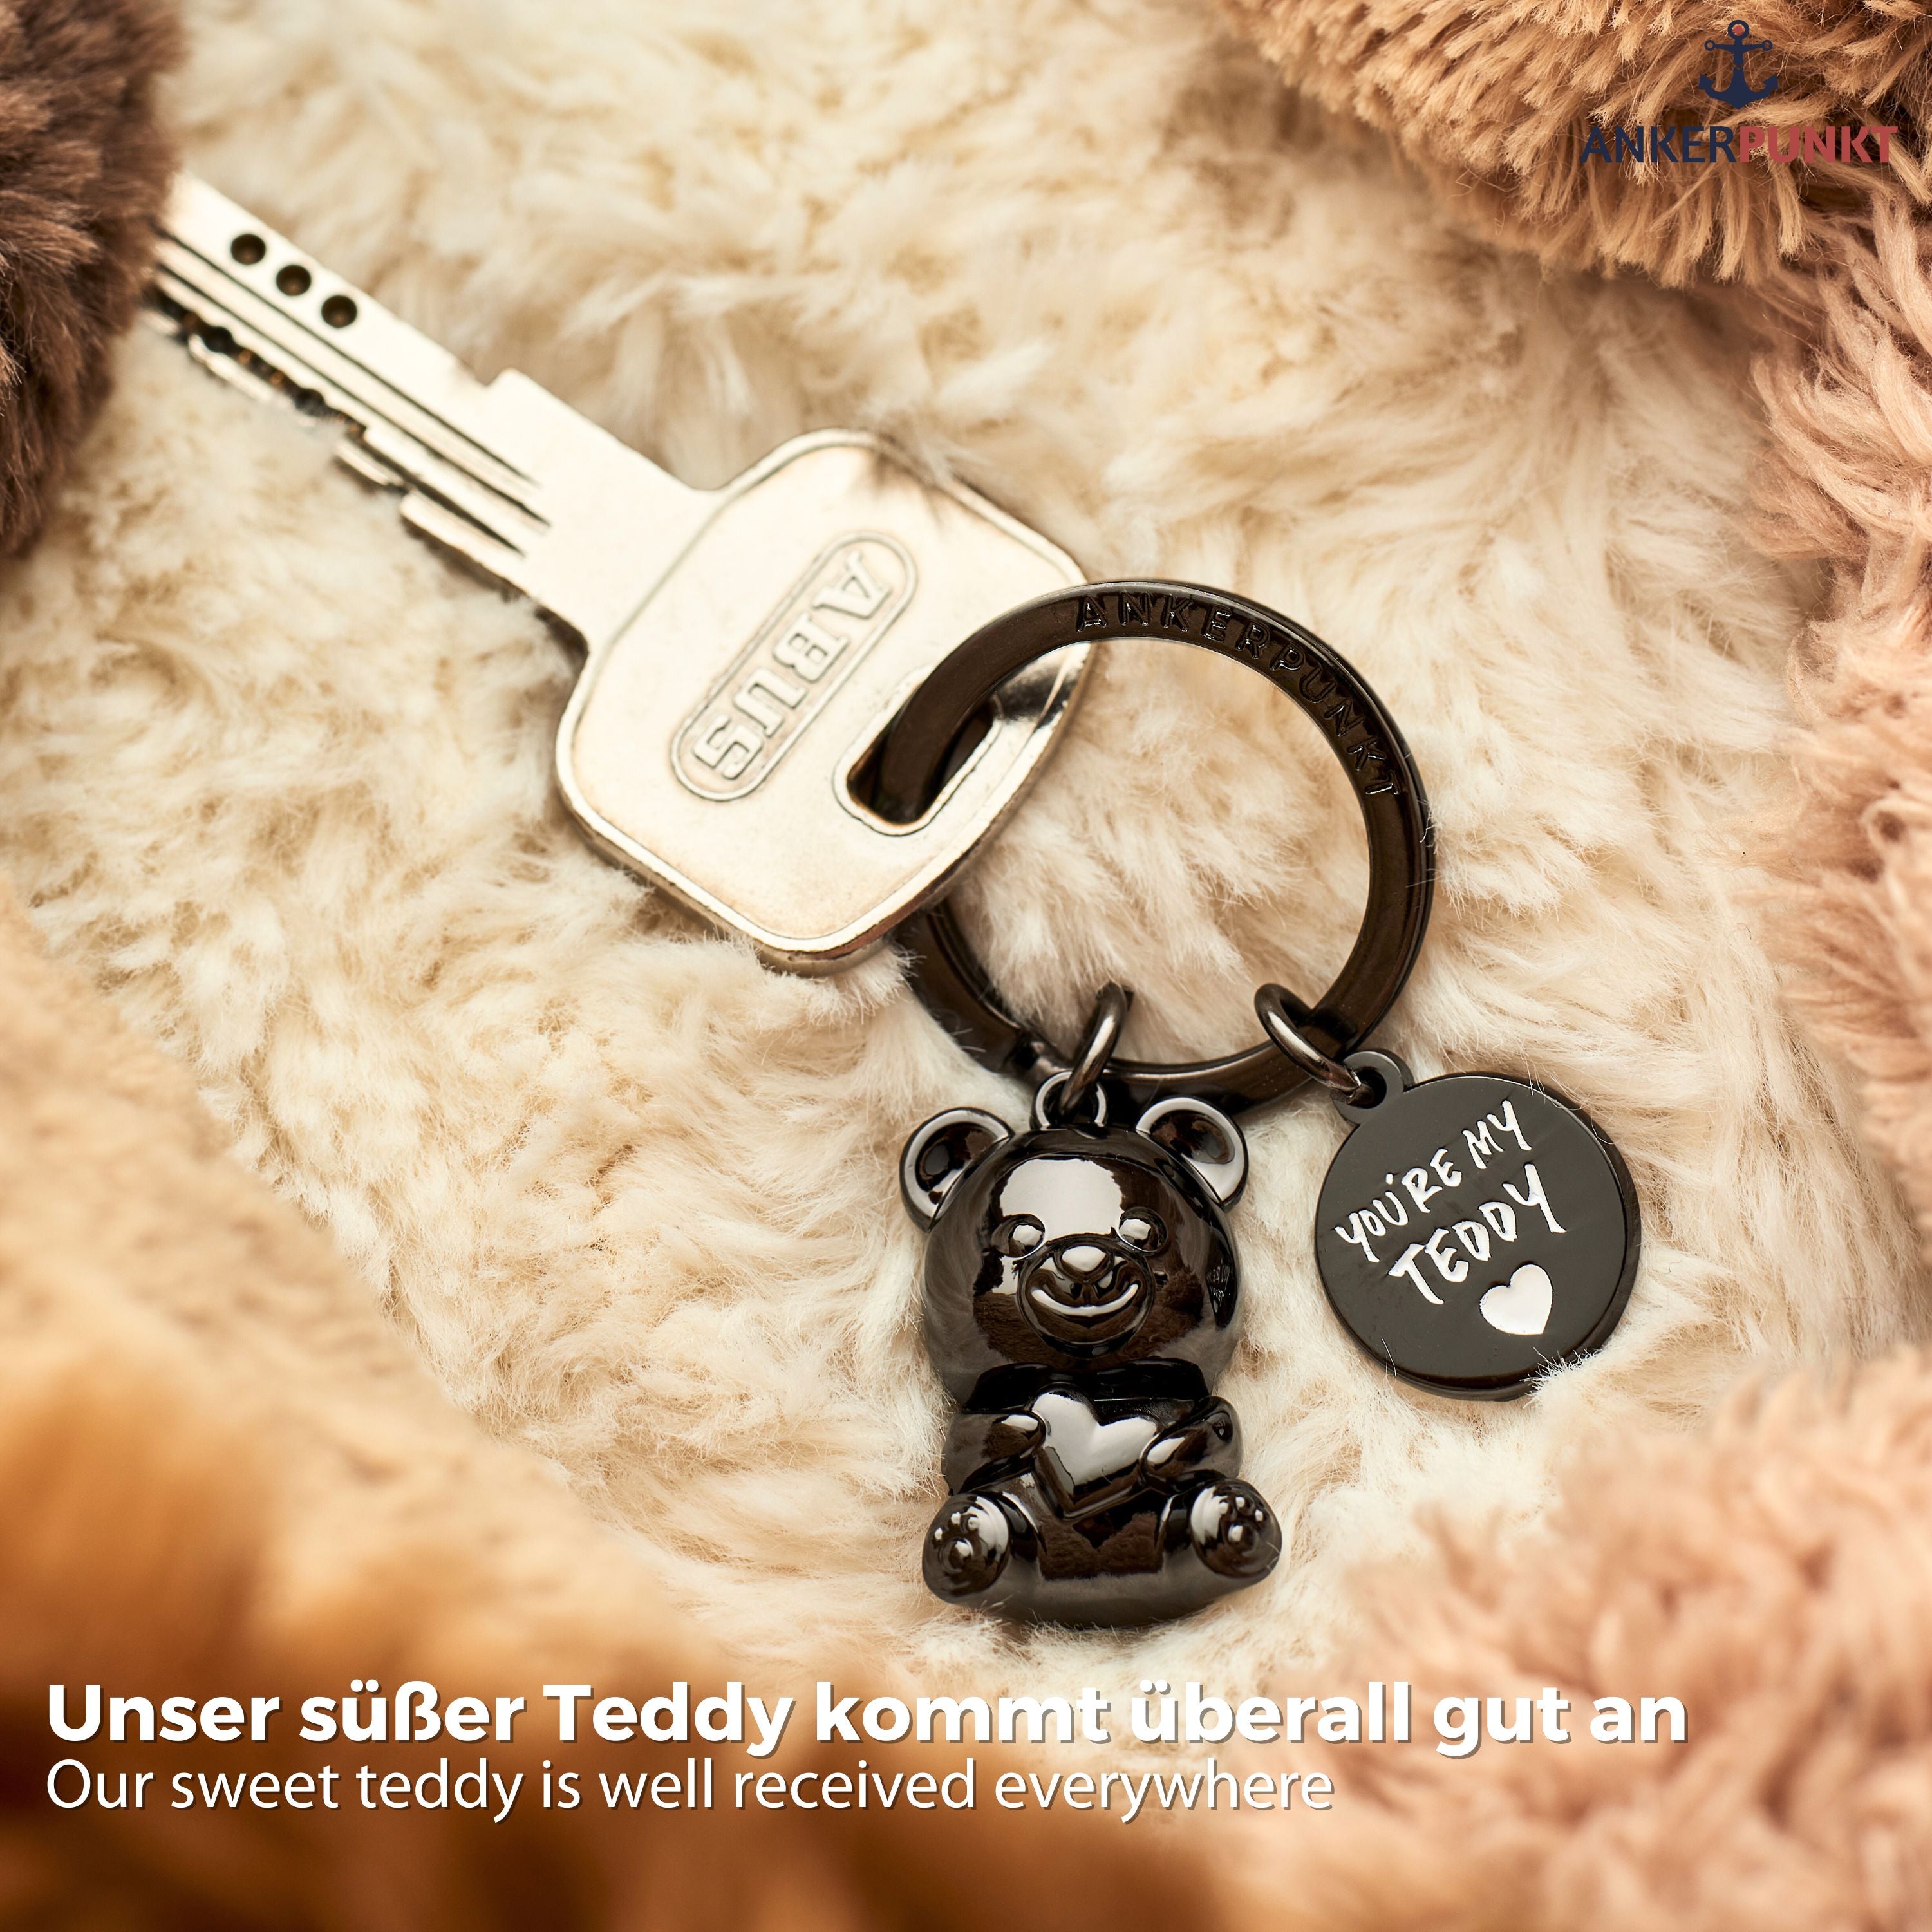 Teddybär Schlüsselanhänger in schwarz glänzend auf Tisch, daneben Laptop und Smartphone